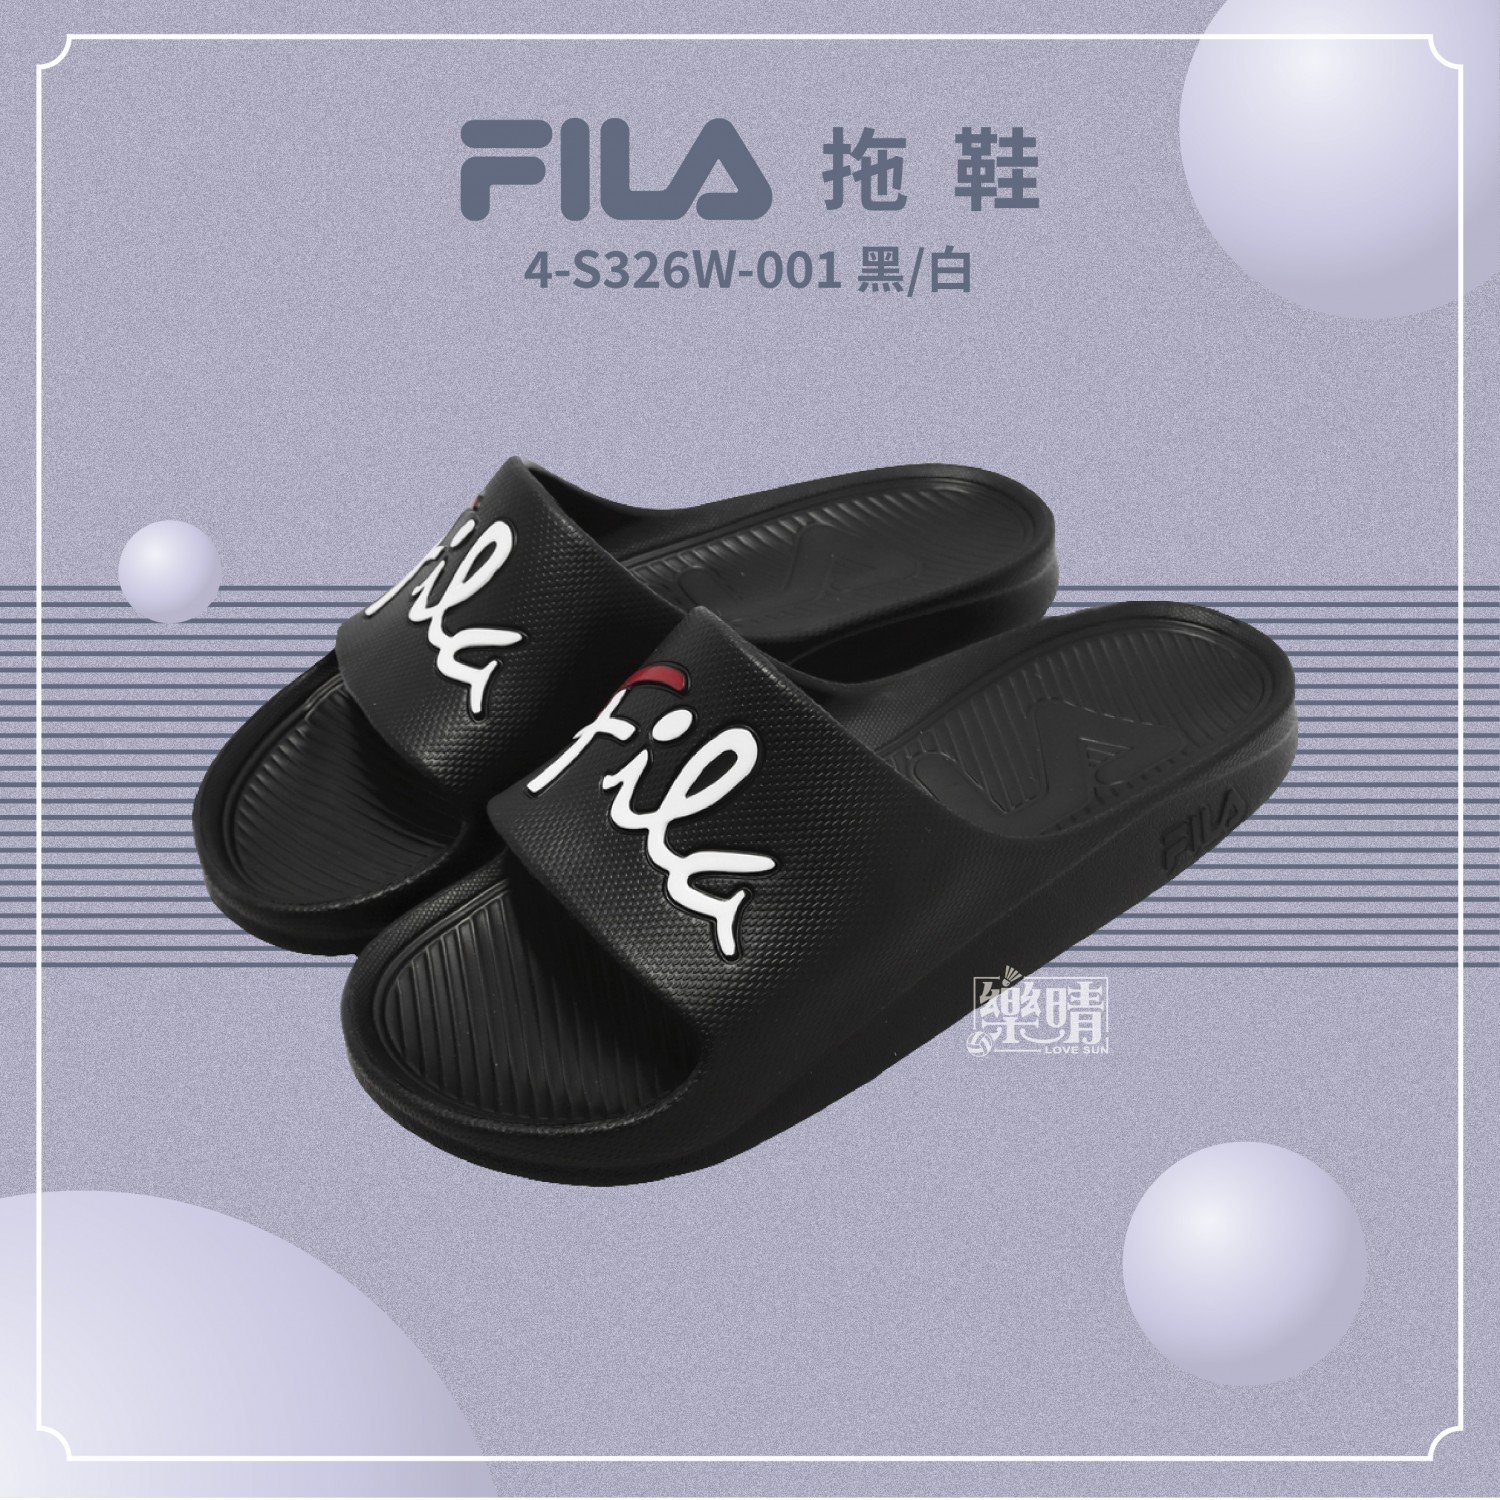 FILA 拖鞋 4-S326W-001